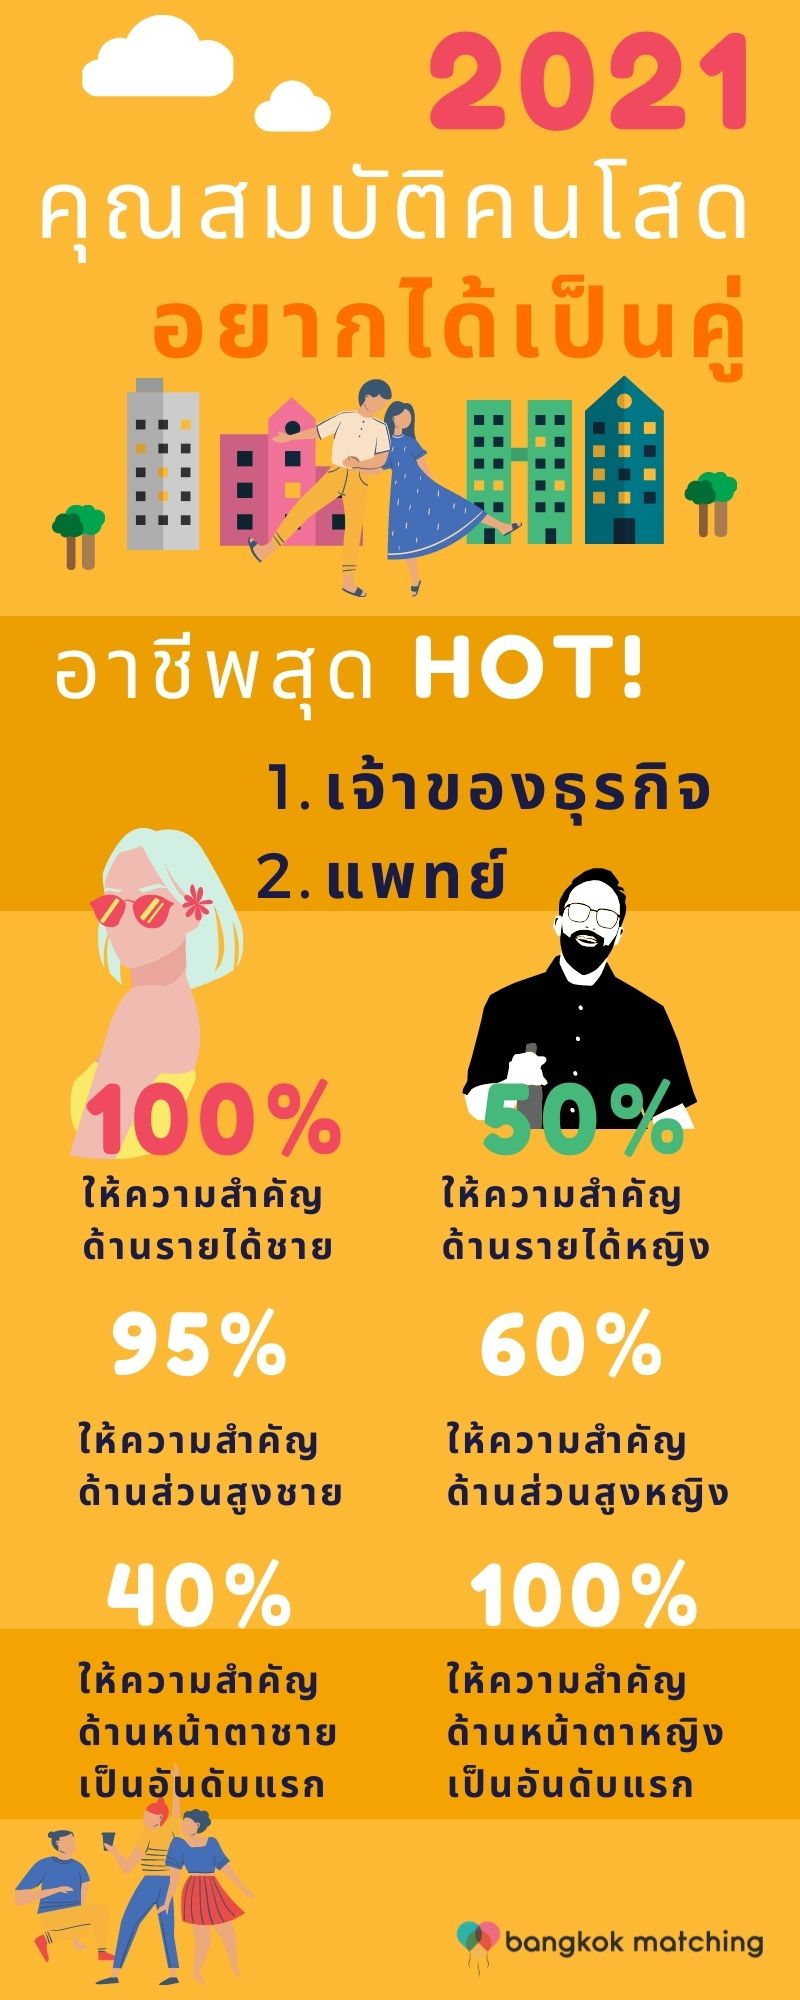 คุณสมบัติขั้นต้นชายหญิงโสดหาคู่ในไทย ใช้สกรีนหาคู่ 2021 โดย บริษัทจัดหาคู่ Bangkok Matching